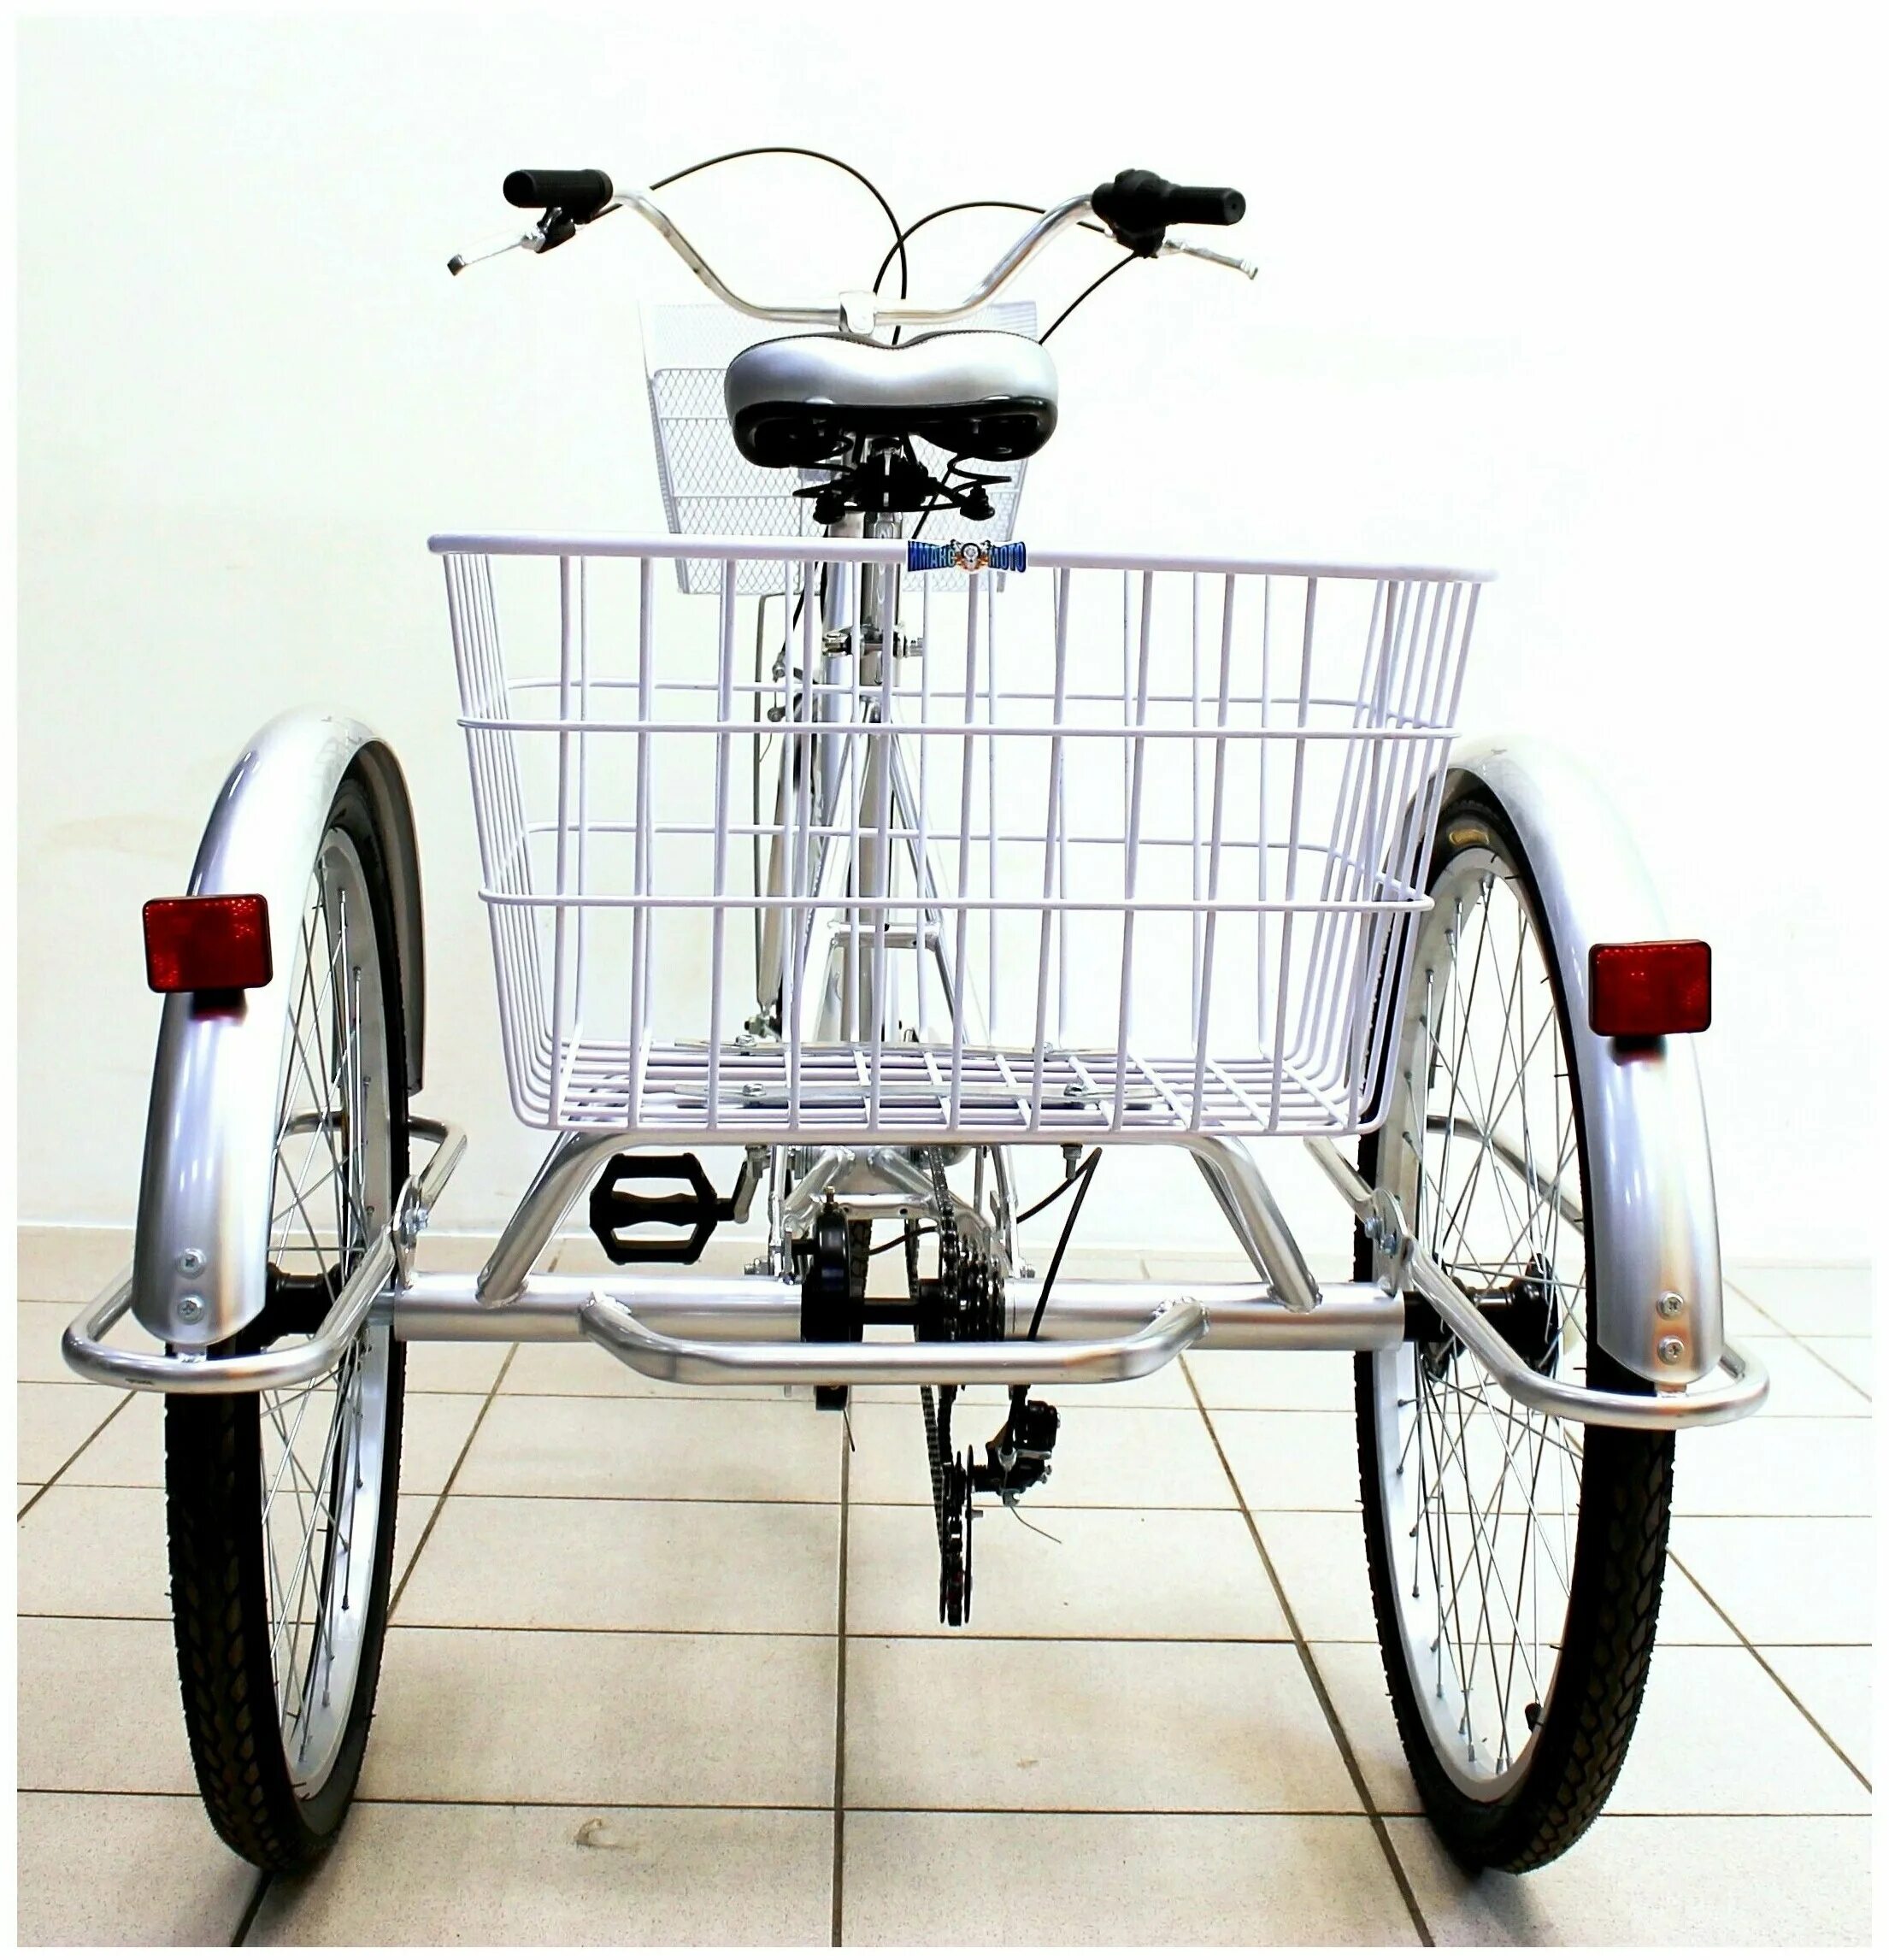 Трехколесный велосипед взрослый байк. Велосипед ИЖ-байк фермер 24. Велосипед трёхколёсный взрослый ИЖ байк фермер. Трехколесный велосипед ИЖ-байк фермер 24. Трехколесный электровелосипед ИЖ байк фермер.